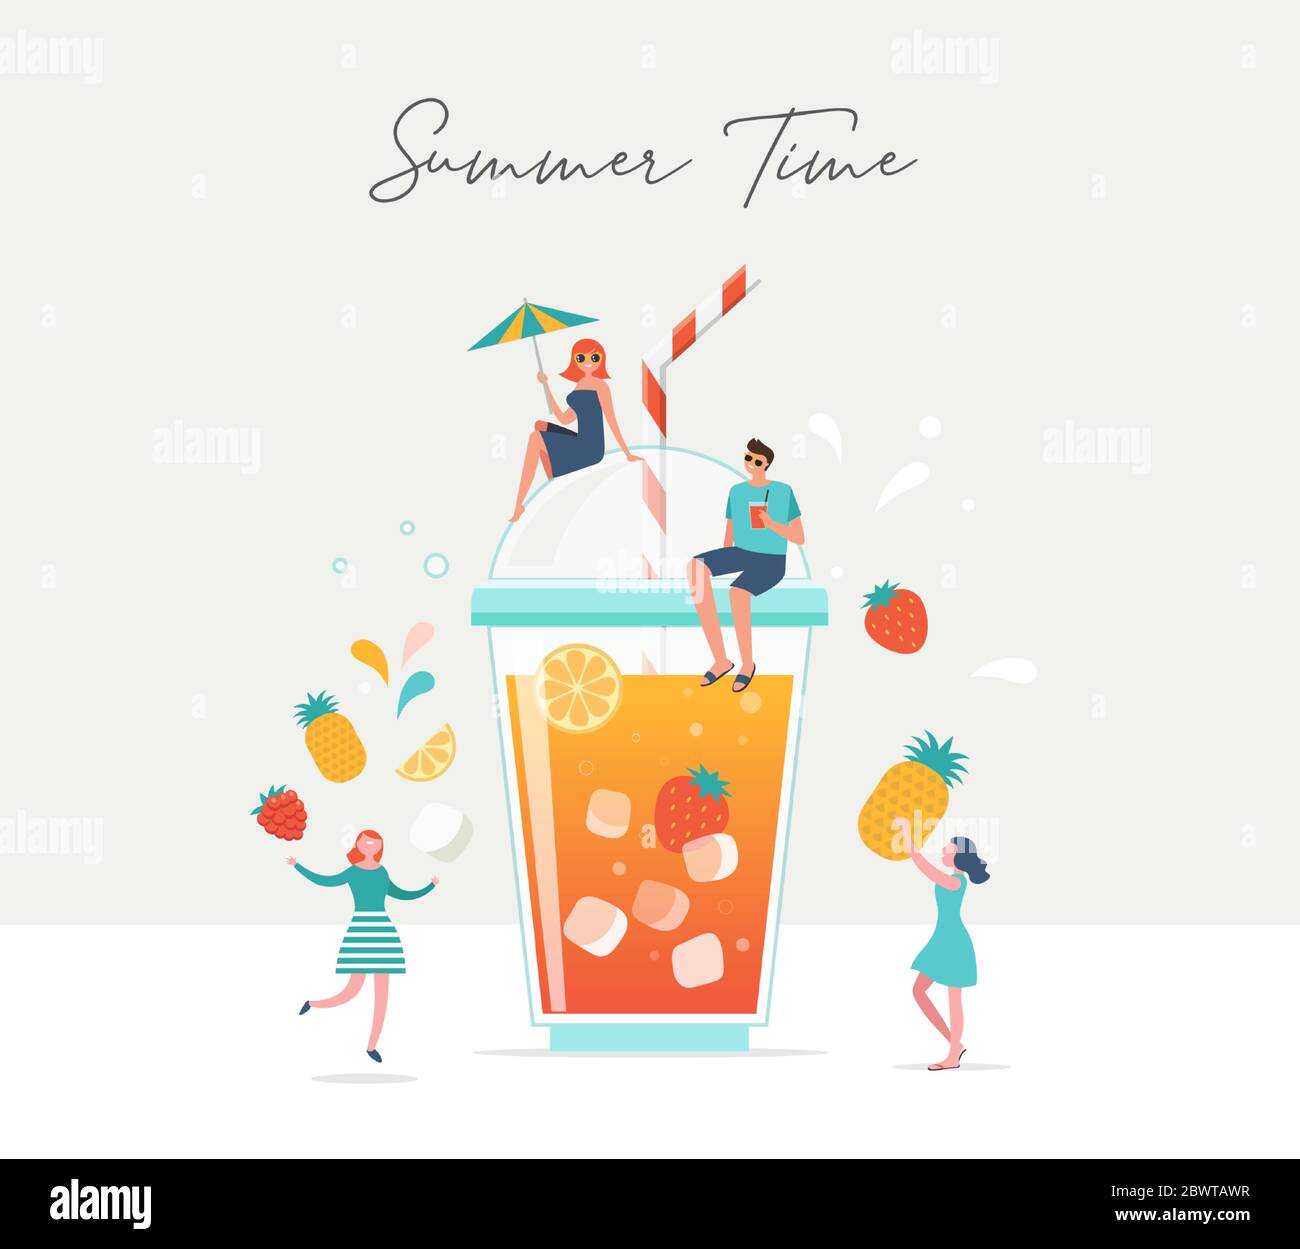 Scena estiva, gruppo di persone, famiglia e amici che si divertono intorno a un enorme bicchiere di succo di frutta, frullato di frutta, surf, nuoto in piscina, bere Illustrazione Vettoriale